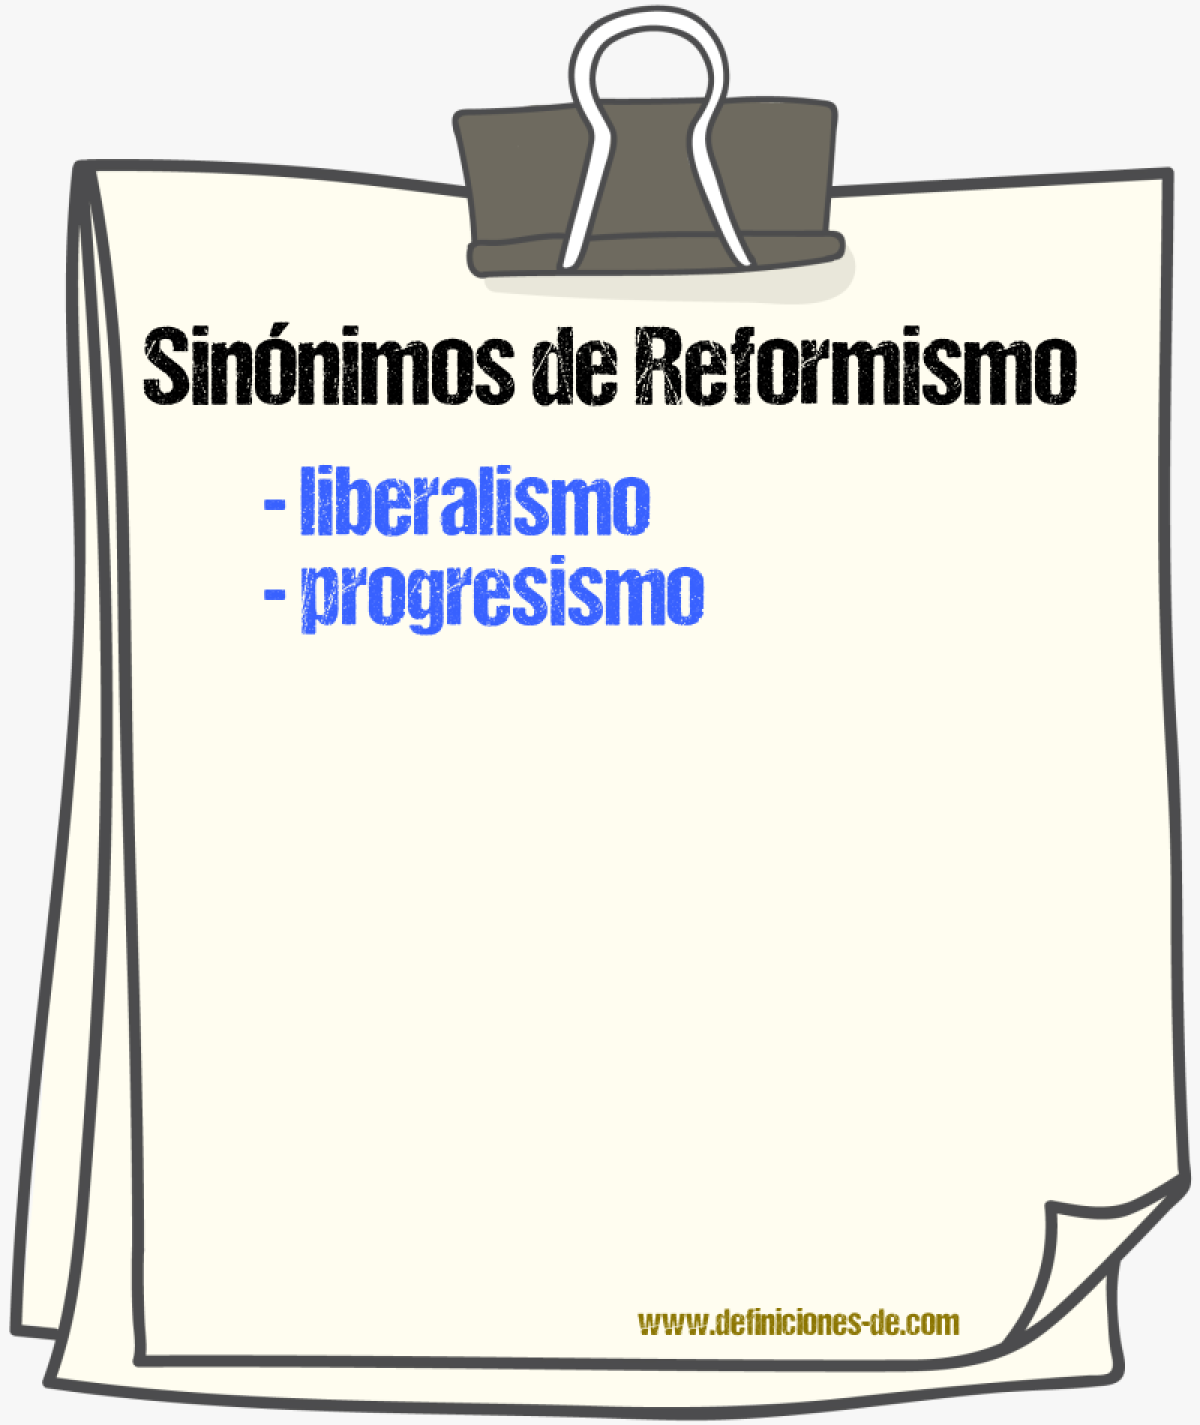 Sinnimos de reformismo